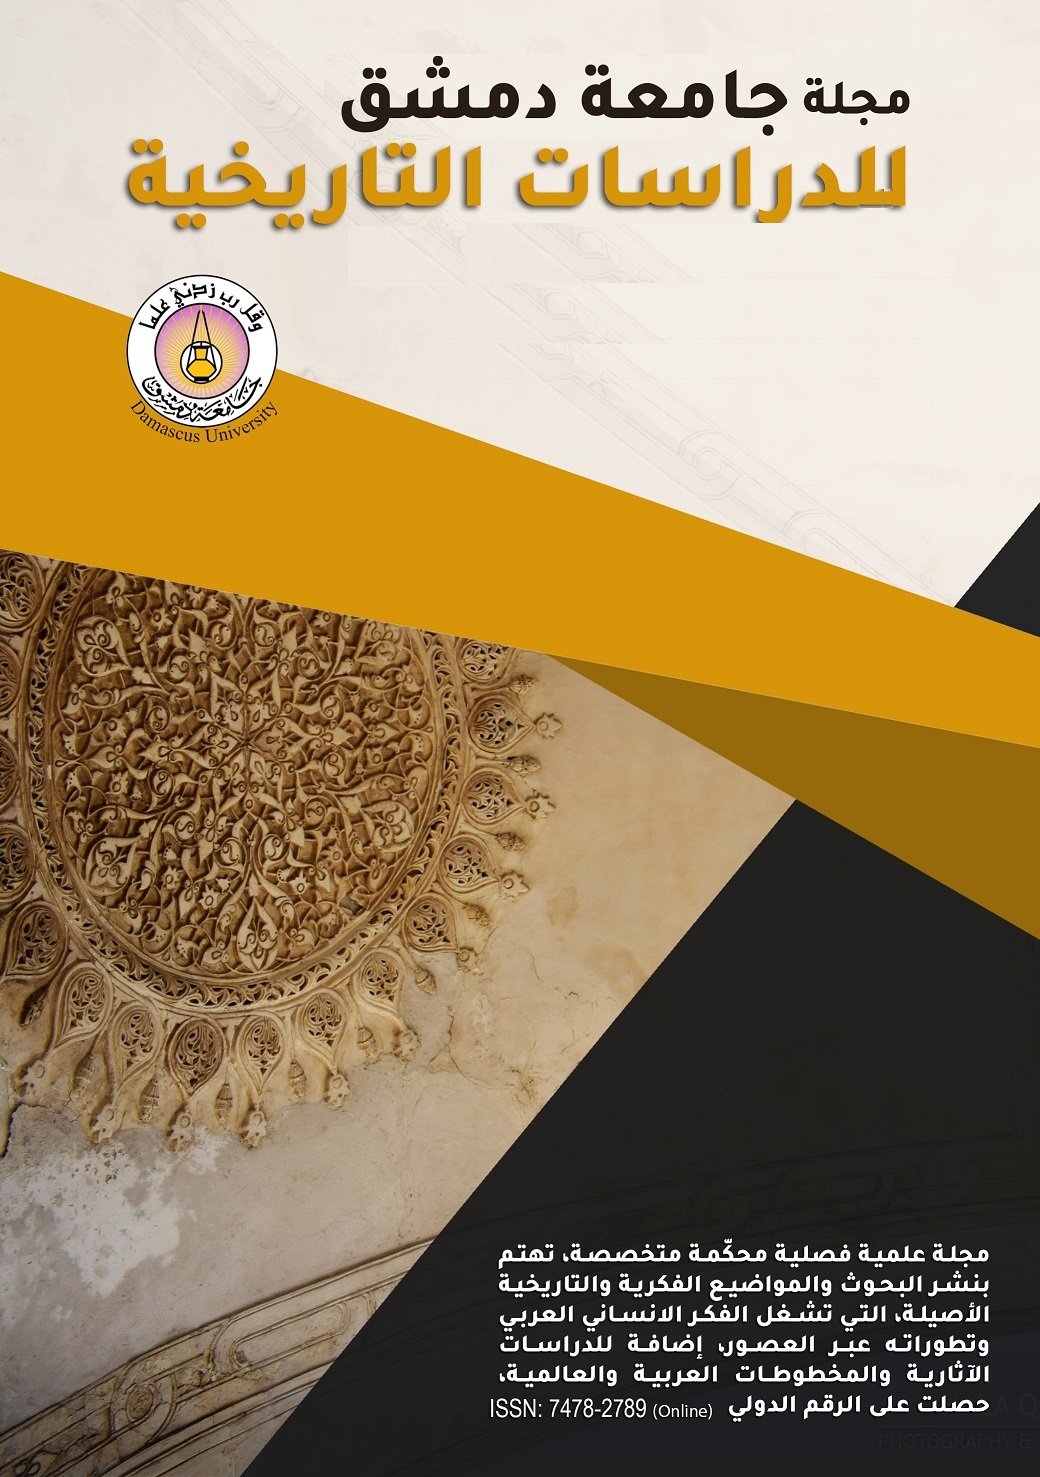 					معاينة مجلد 141 عدد 3 (2021): مجلة جامعة دمشق للدراسات التاريخية
				